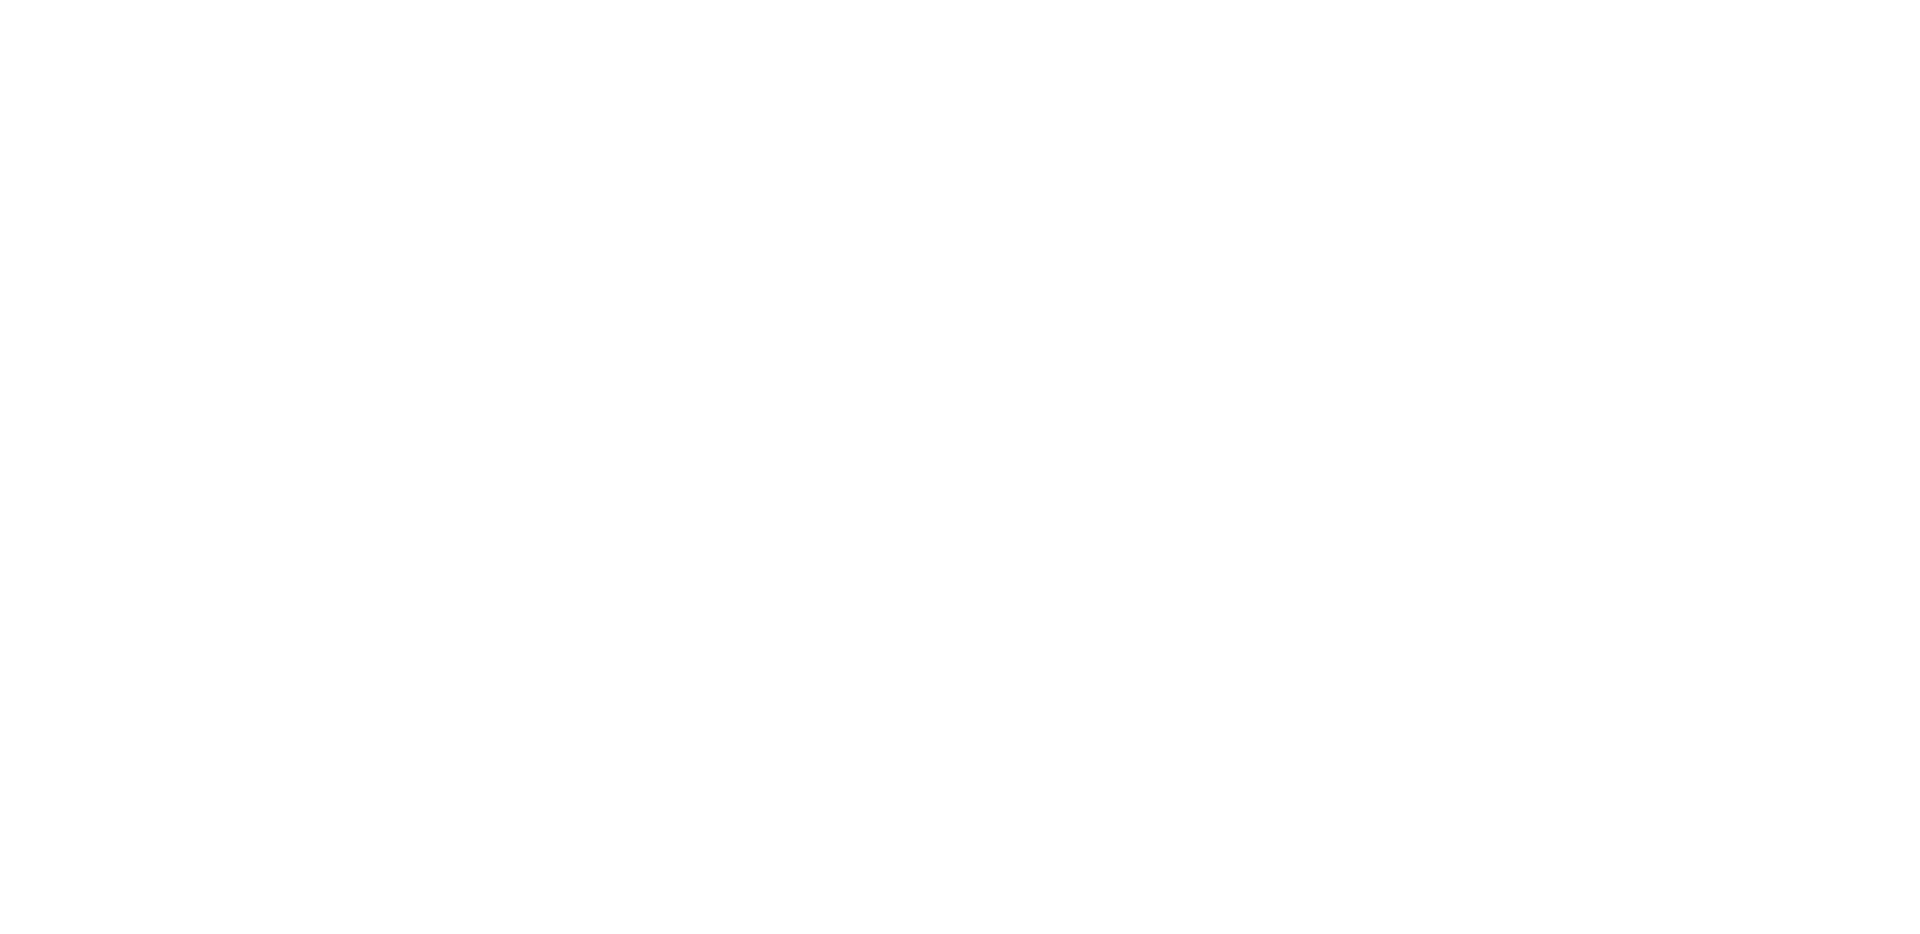 Spielen Sie LightningBox Spiele auf Starcasino.be